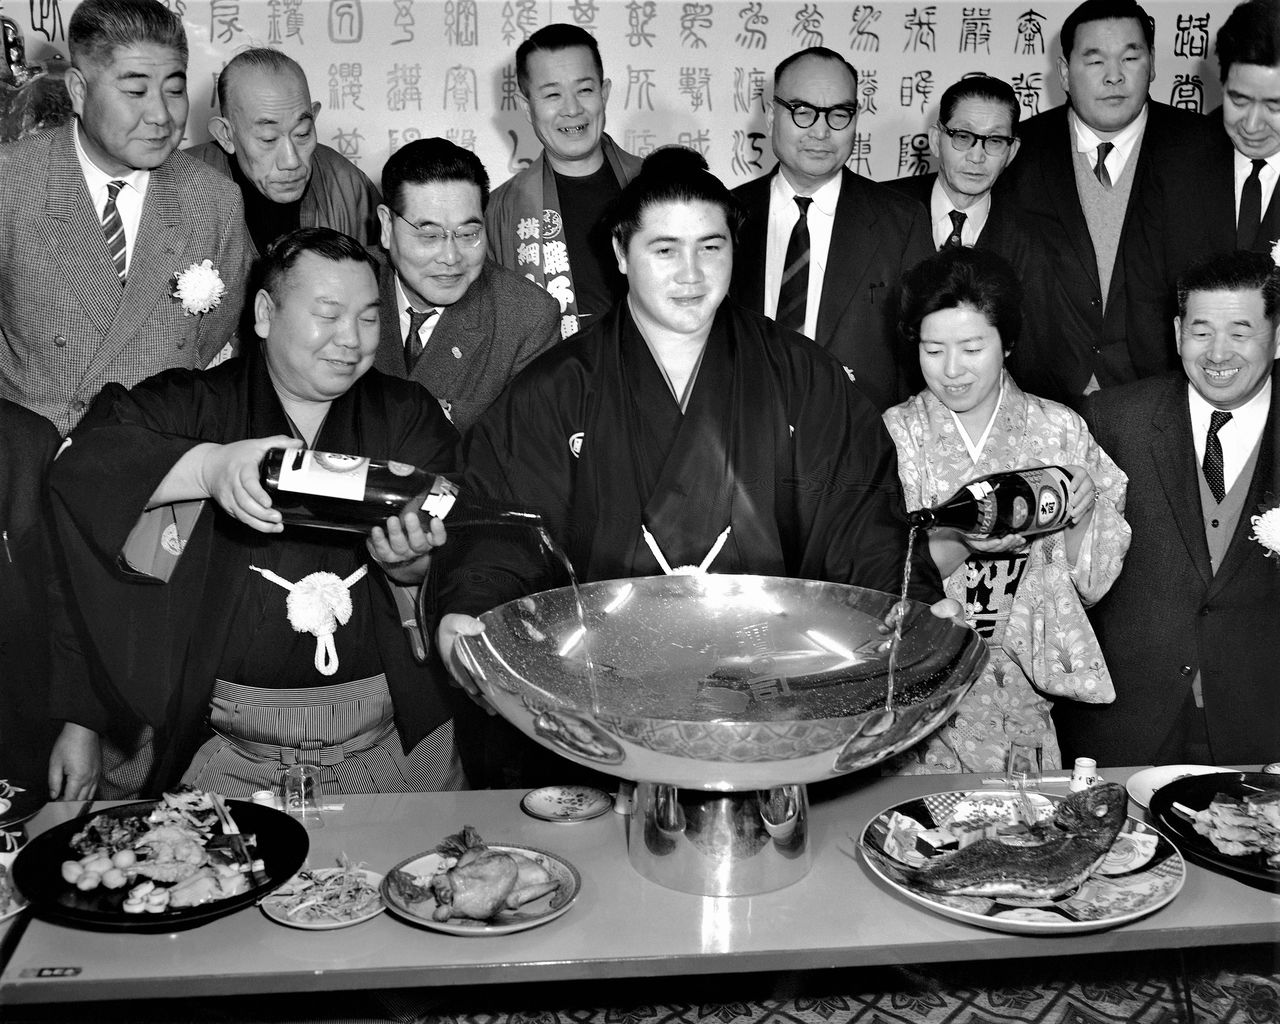 48-й ёкодзуна Тайхо. 32 победы в макуути, дважды подряд чемпион 6 турниров, 8 побед в национальных чемпионатах. В 1960-е годы вся Япония была без ума от Тайхо (Jiji Press)